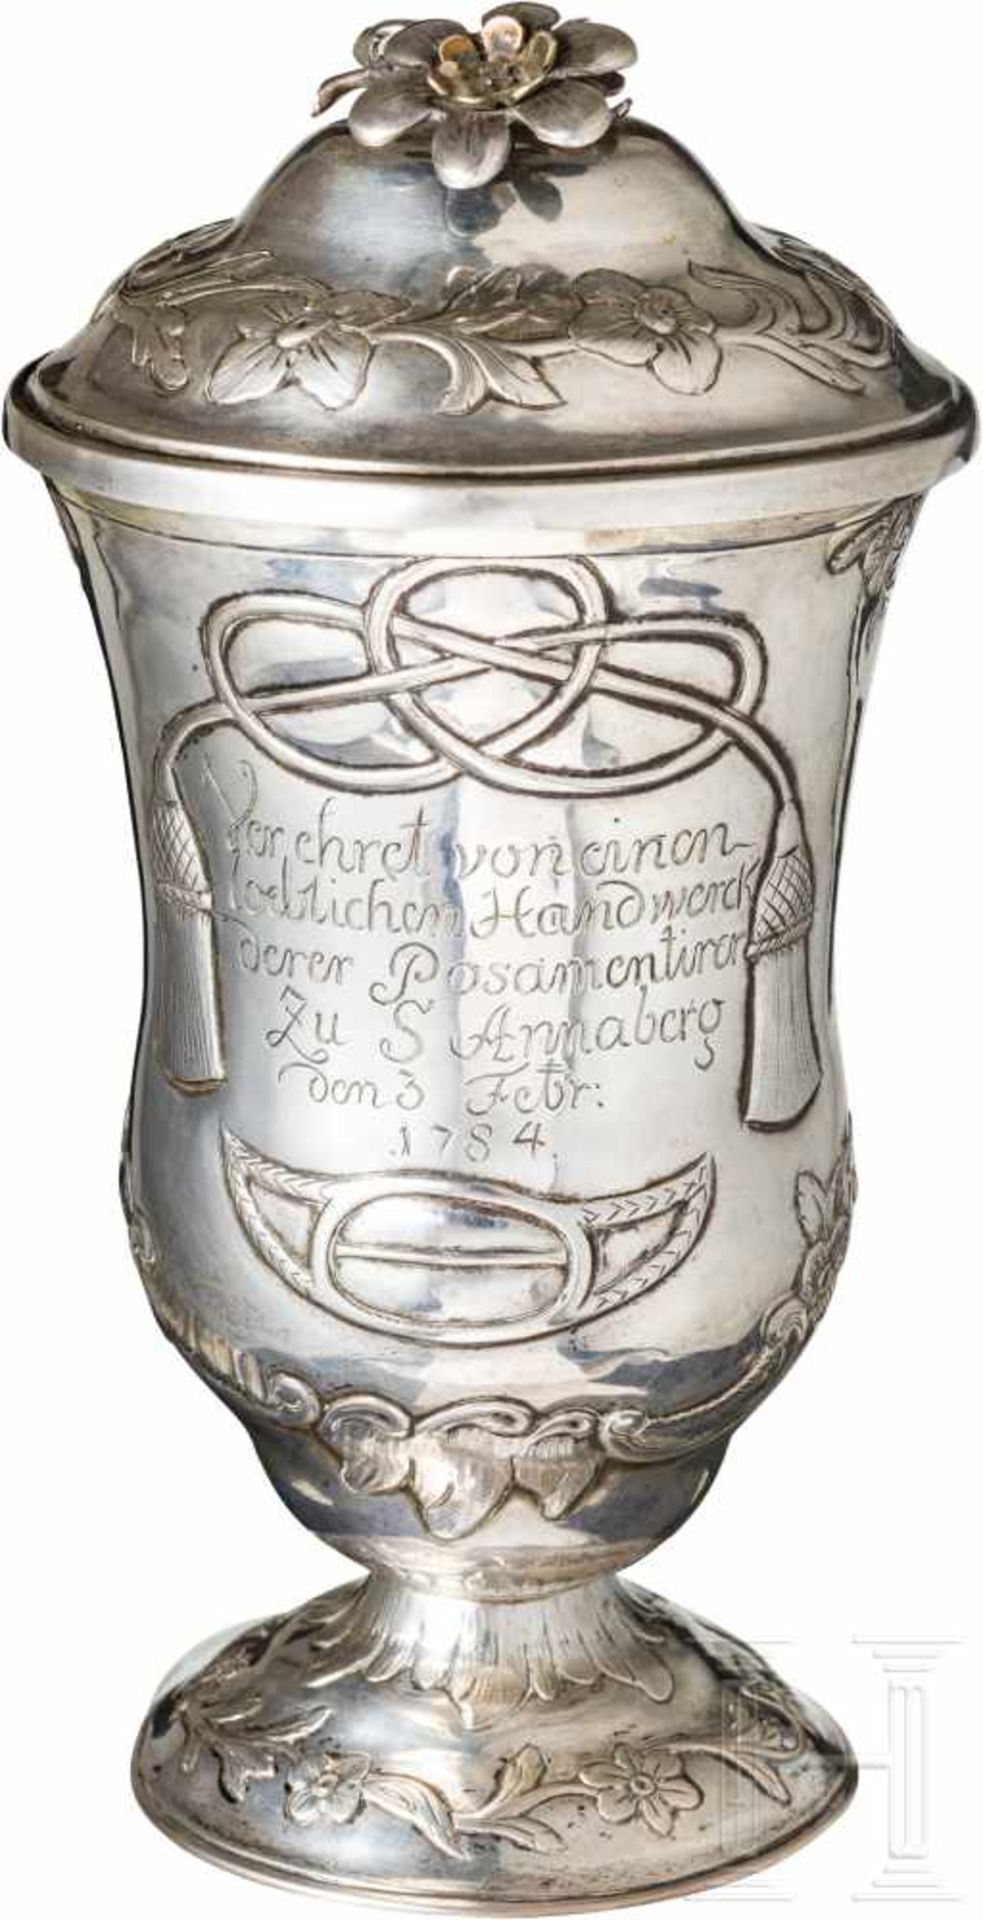 Silberner Geschenkbecher der Posamentierer zu Annaberg, datiert 1784Gefußter Becher mit eingezogener